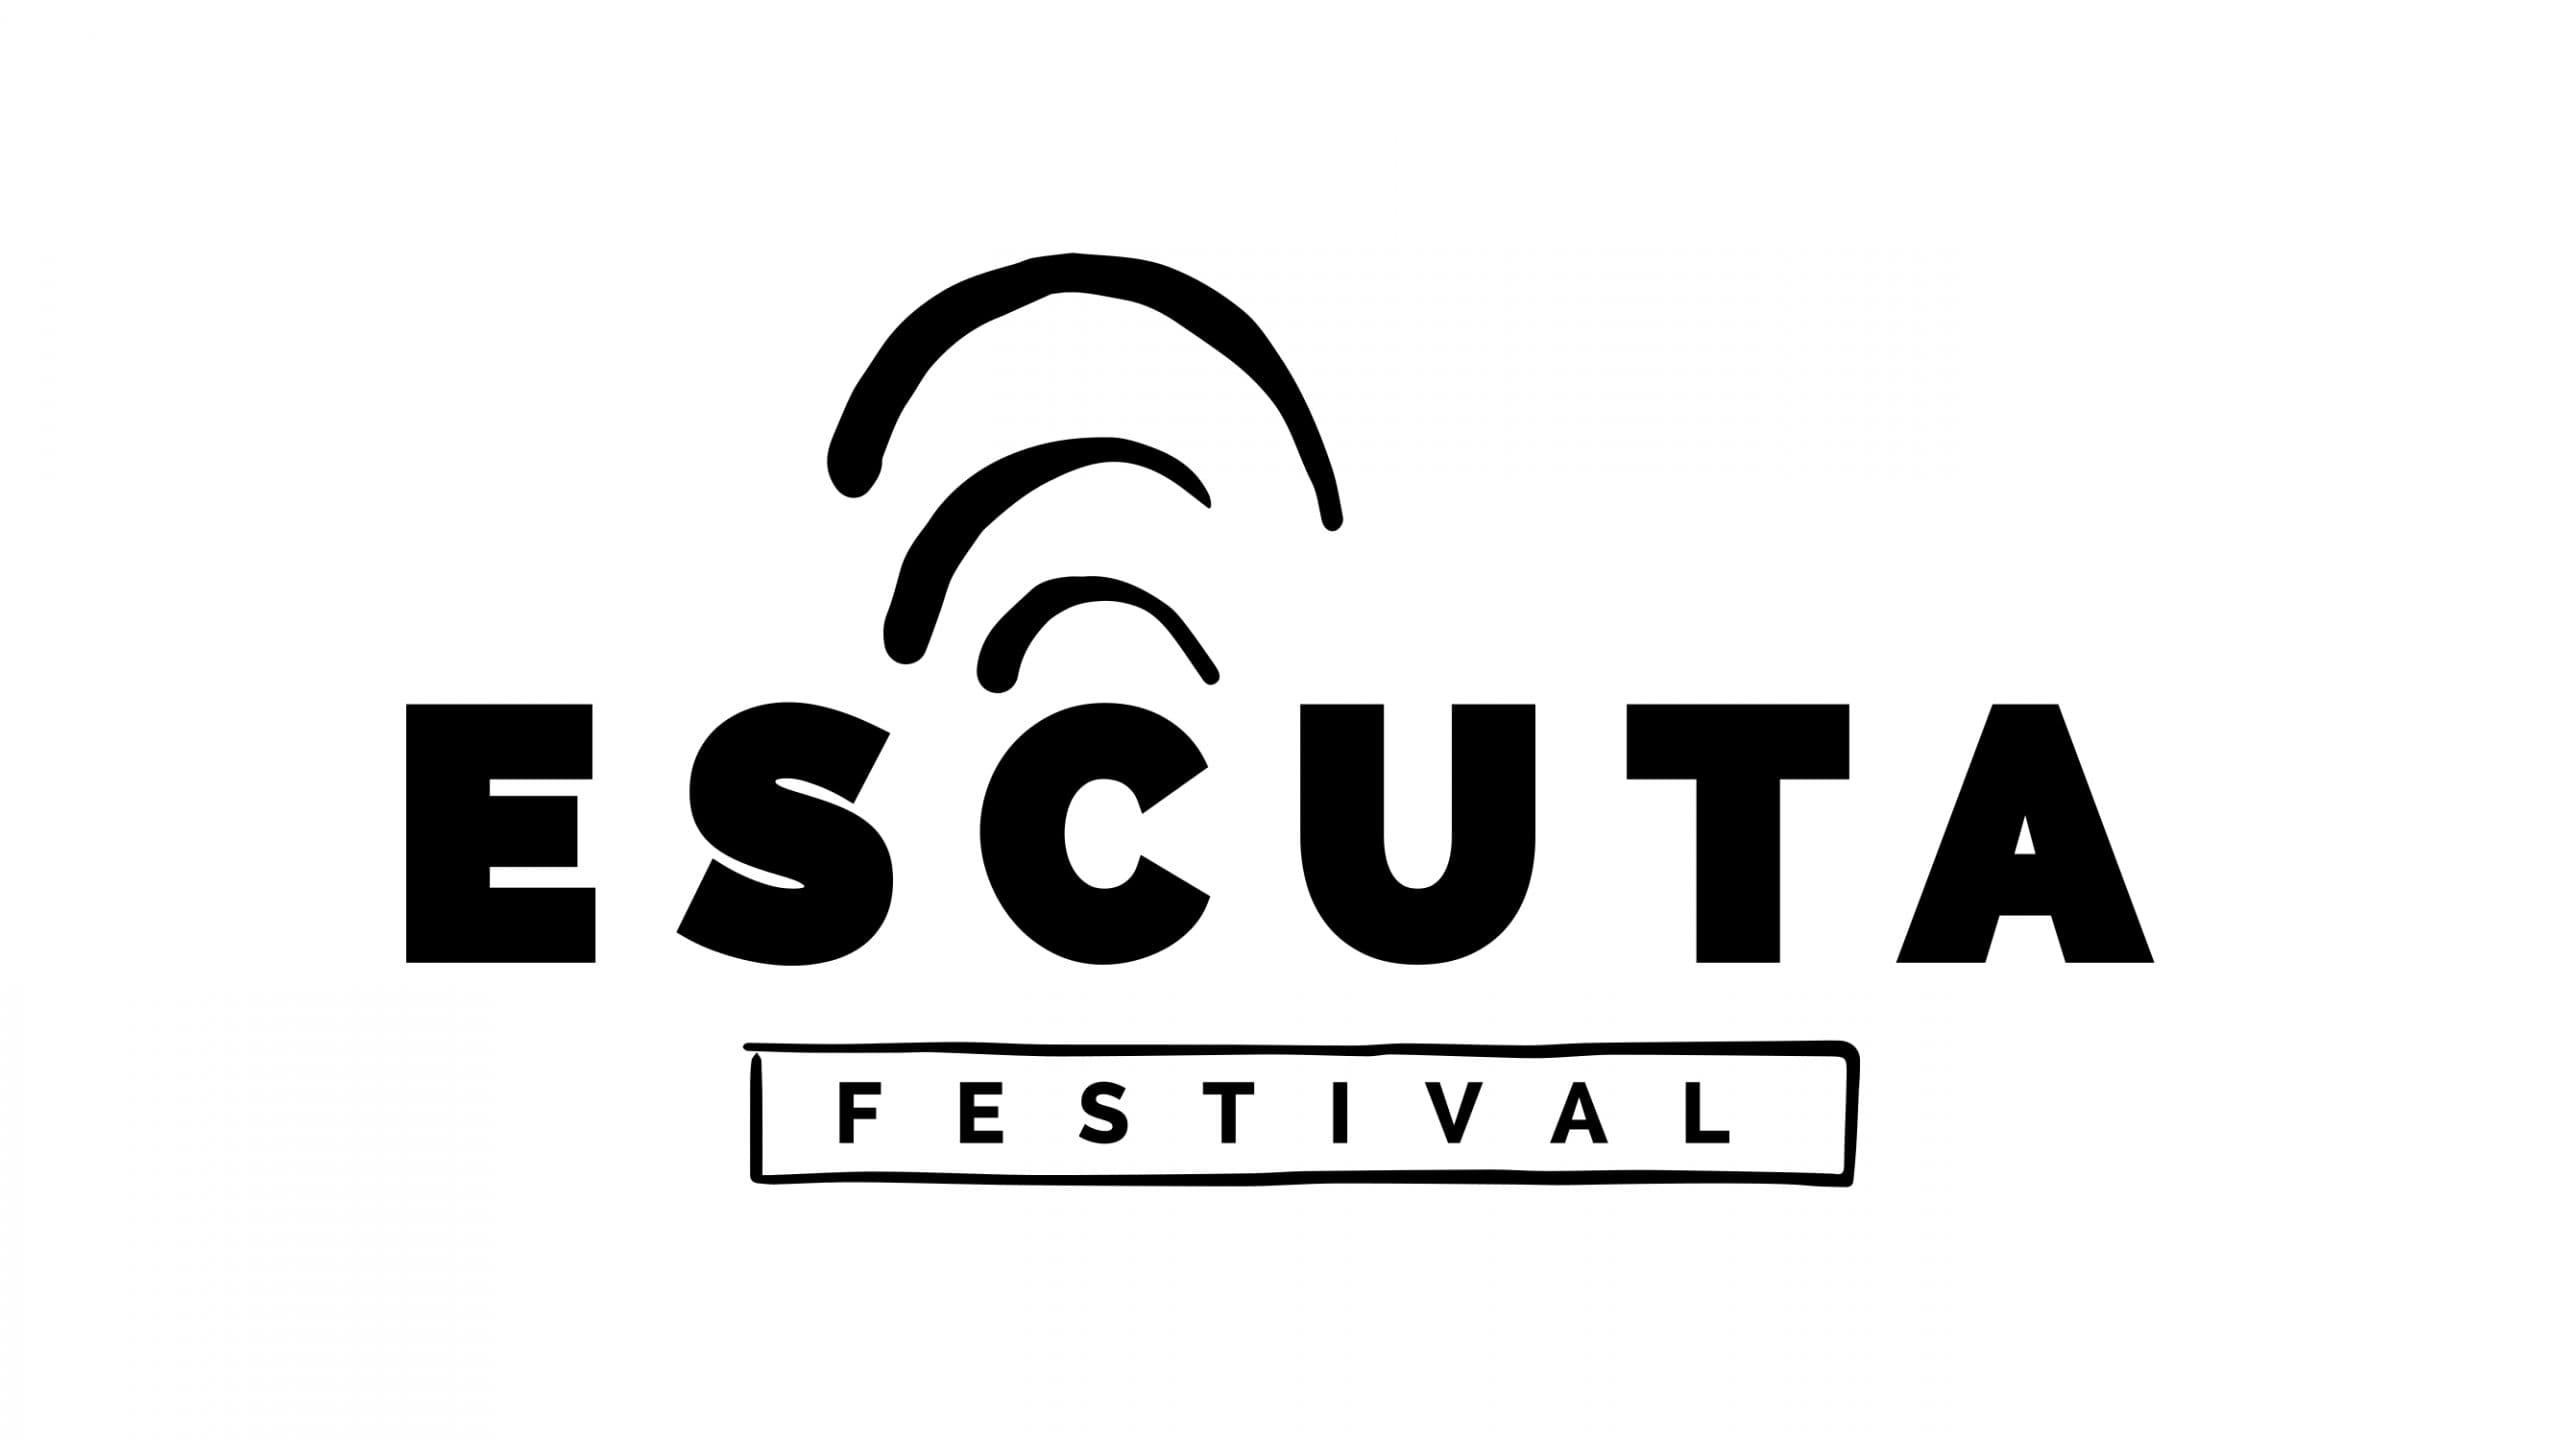 Escuta Festival promove três dias de atividades gratuitas, com artistas da periferia carioca